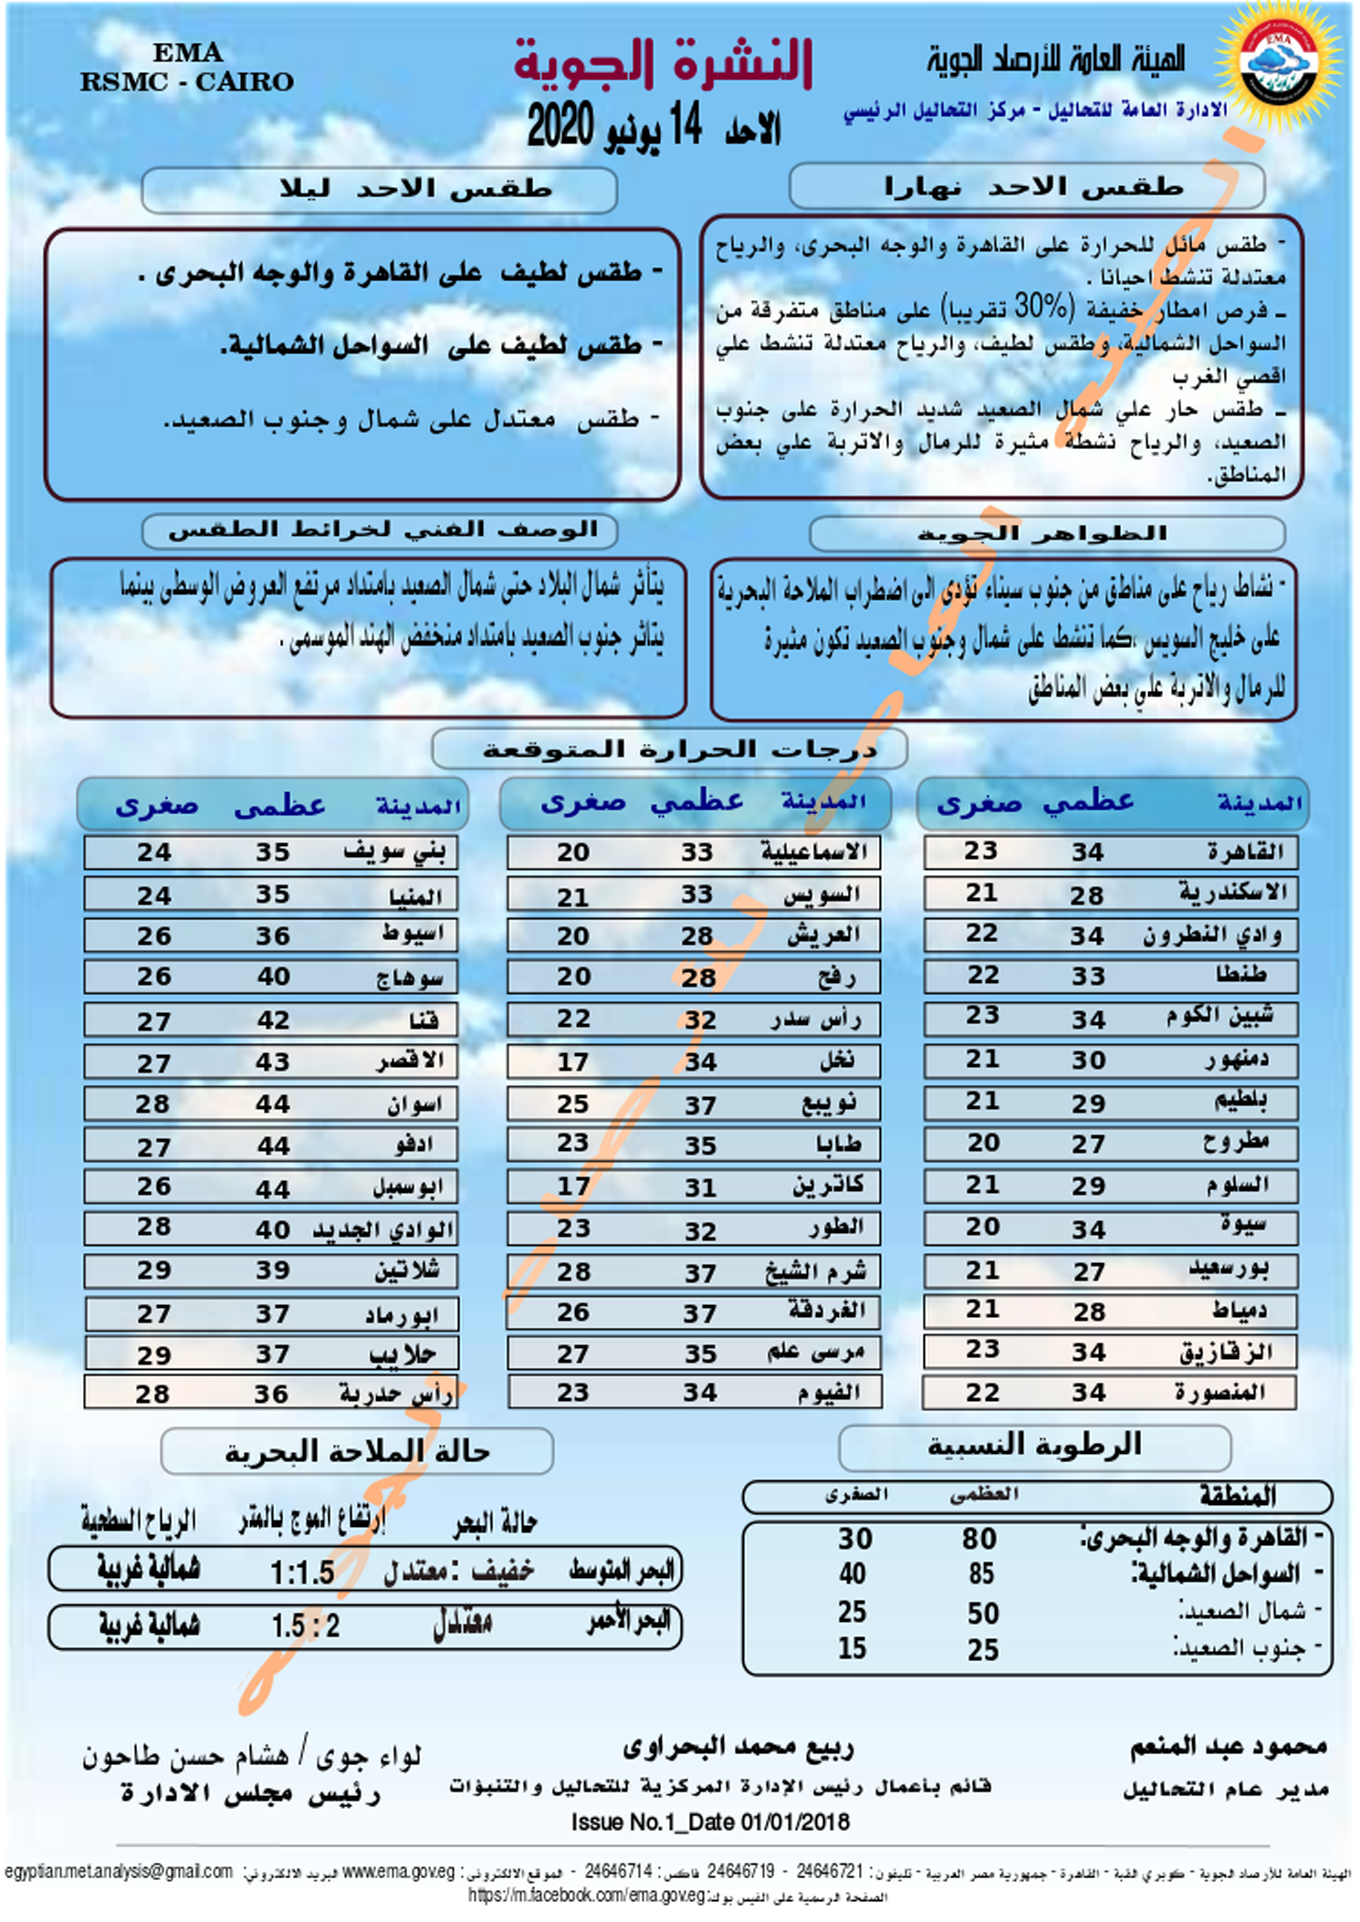 هيئة الأرصاد الجوية المصرية